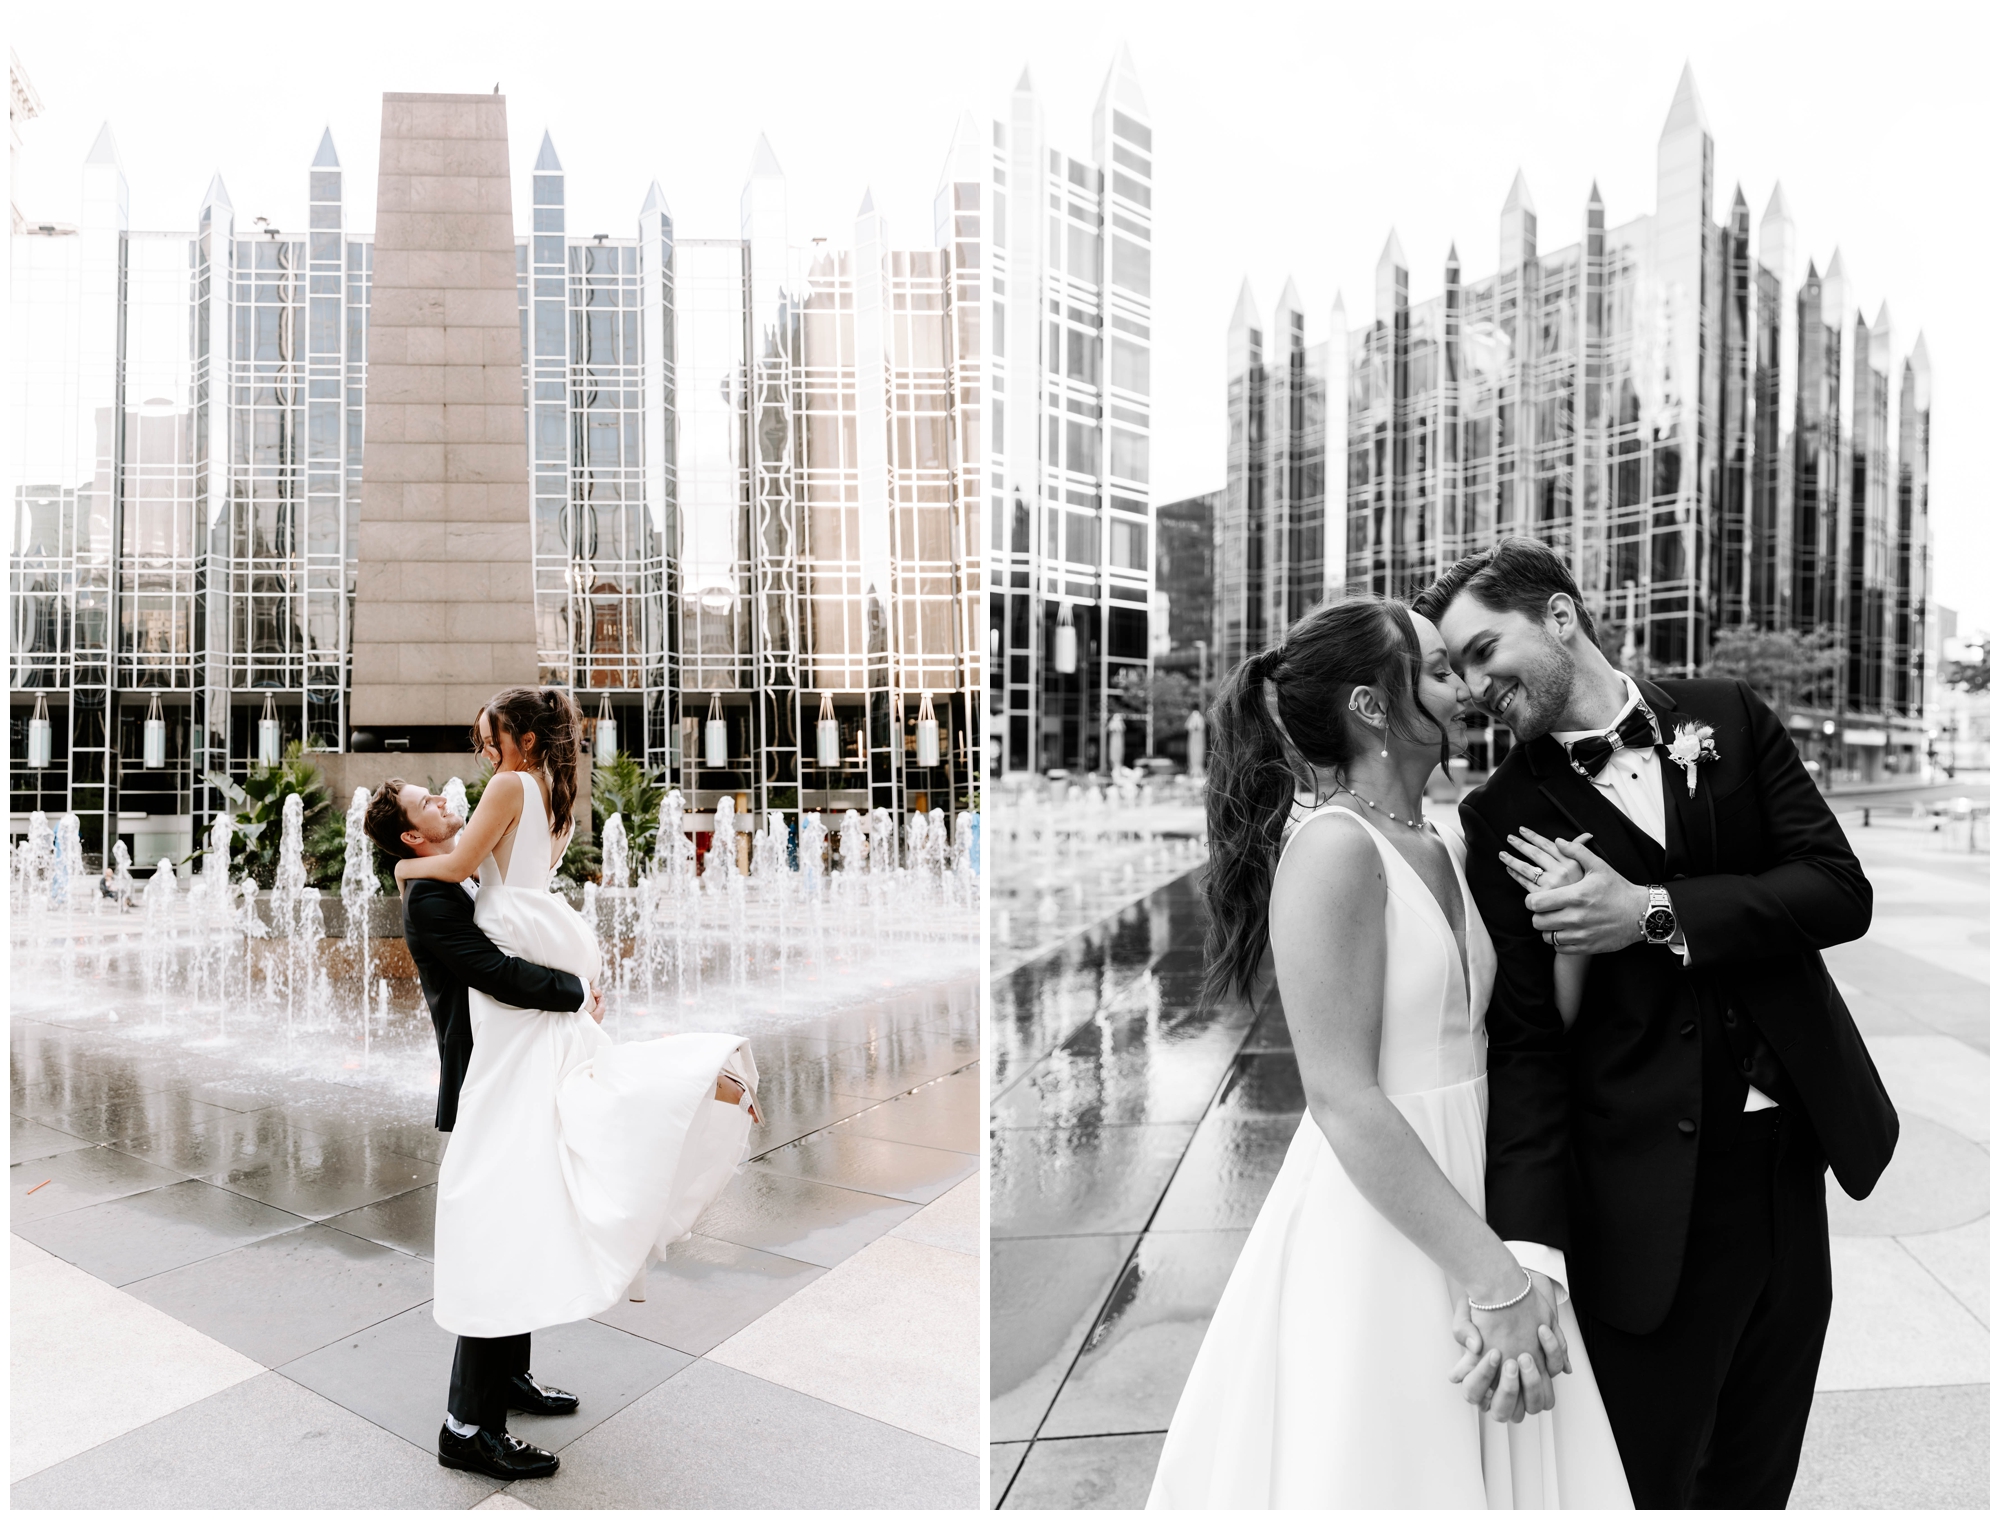 wedding photography by Rachel Wehan; Pittsburgh wedding vendors